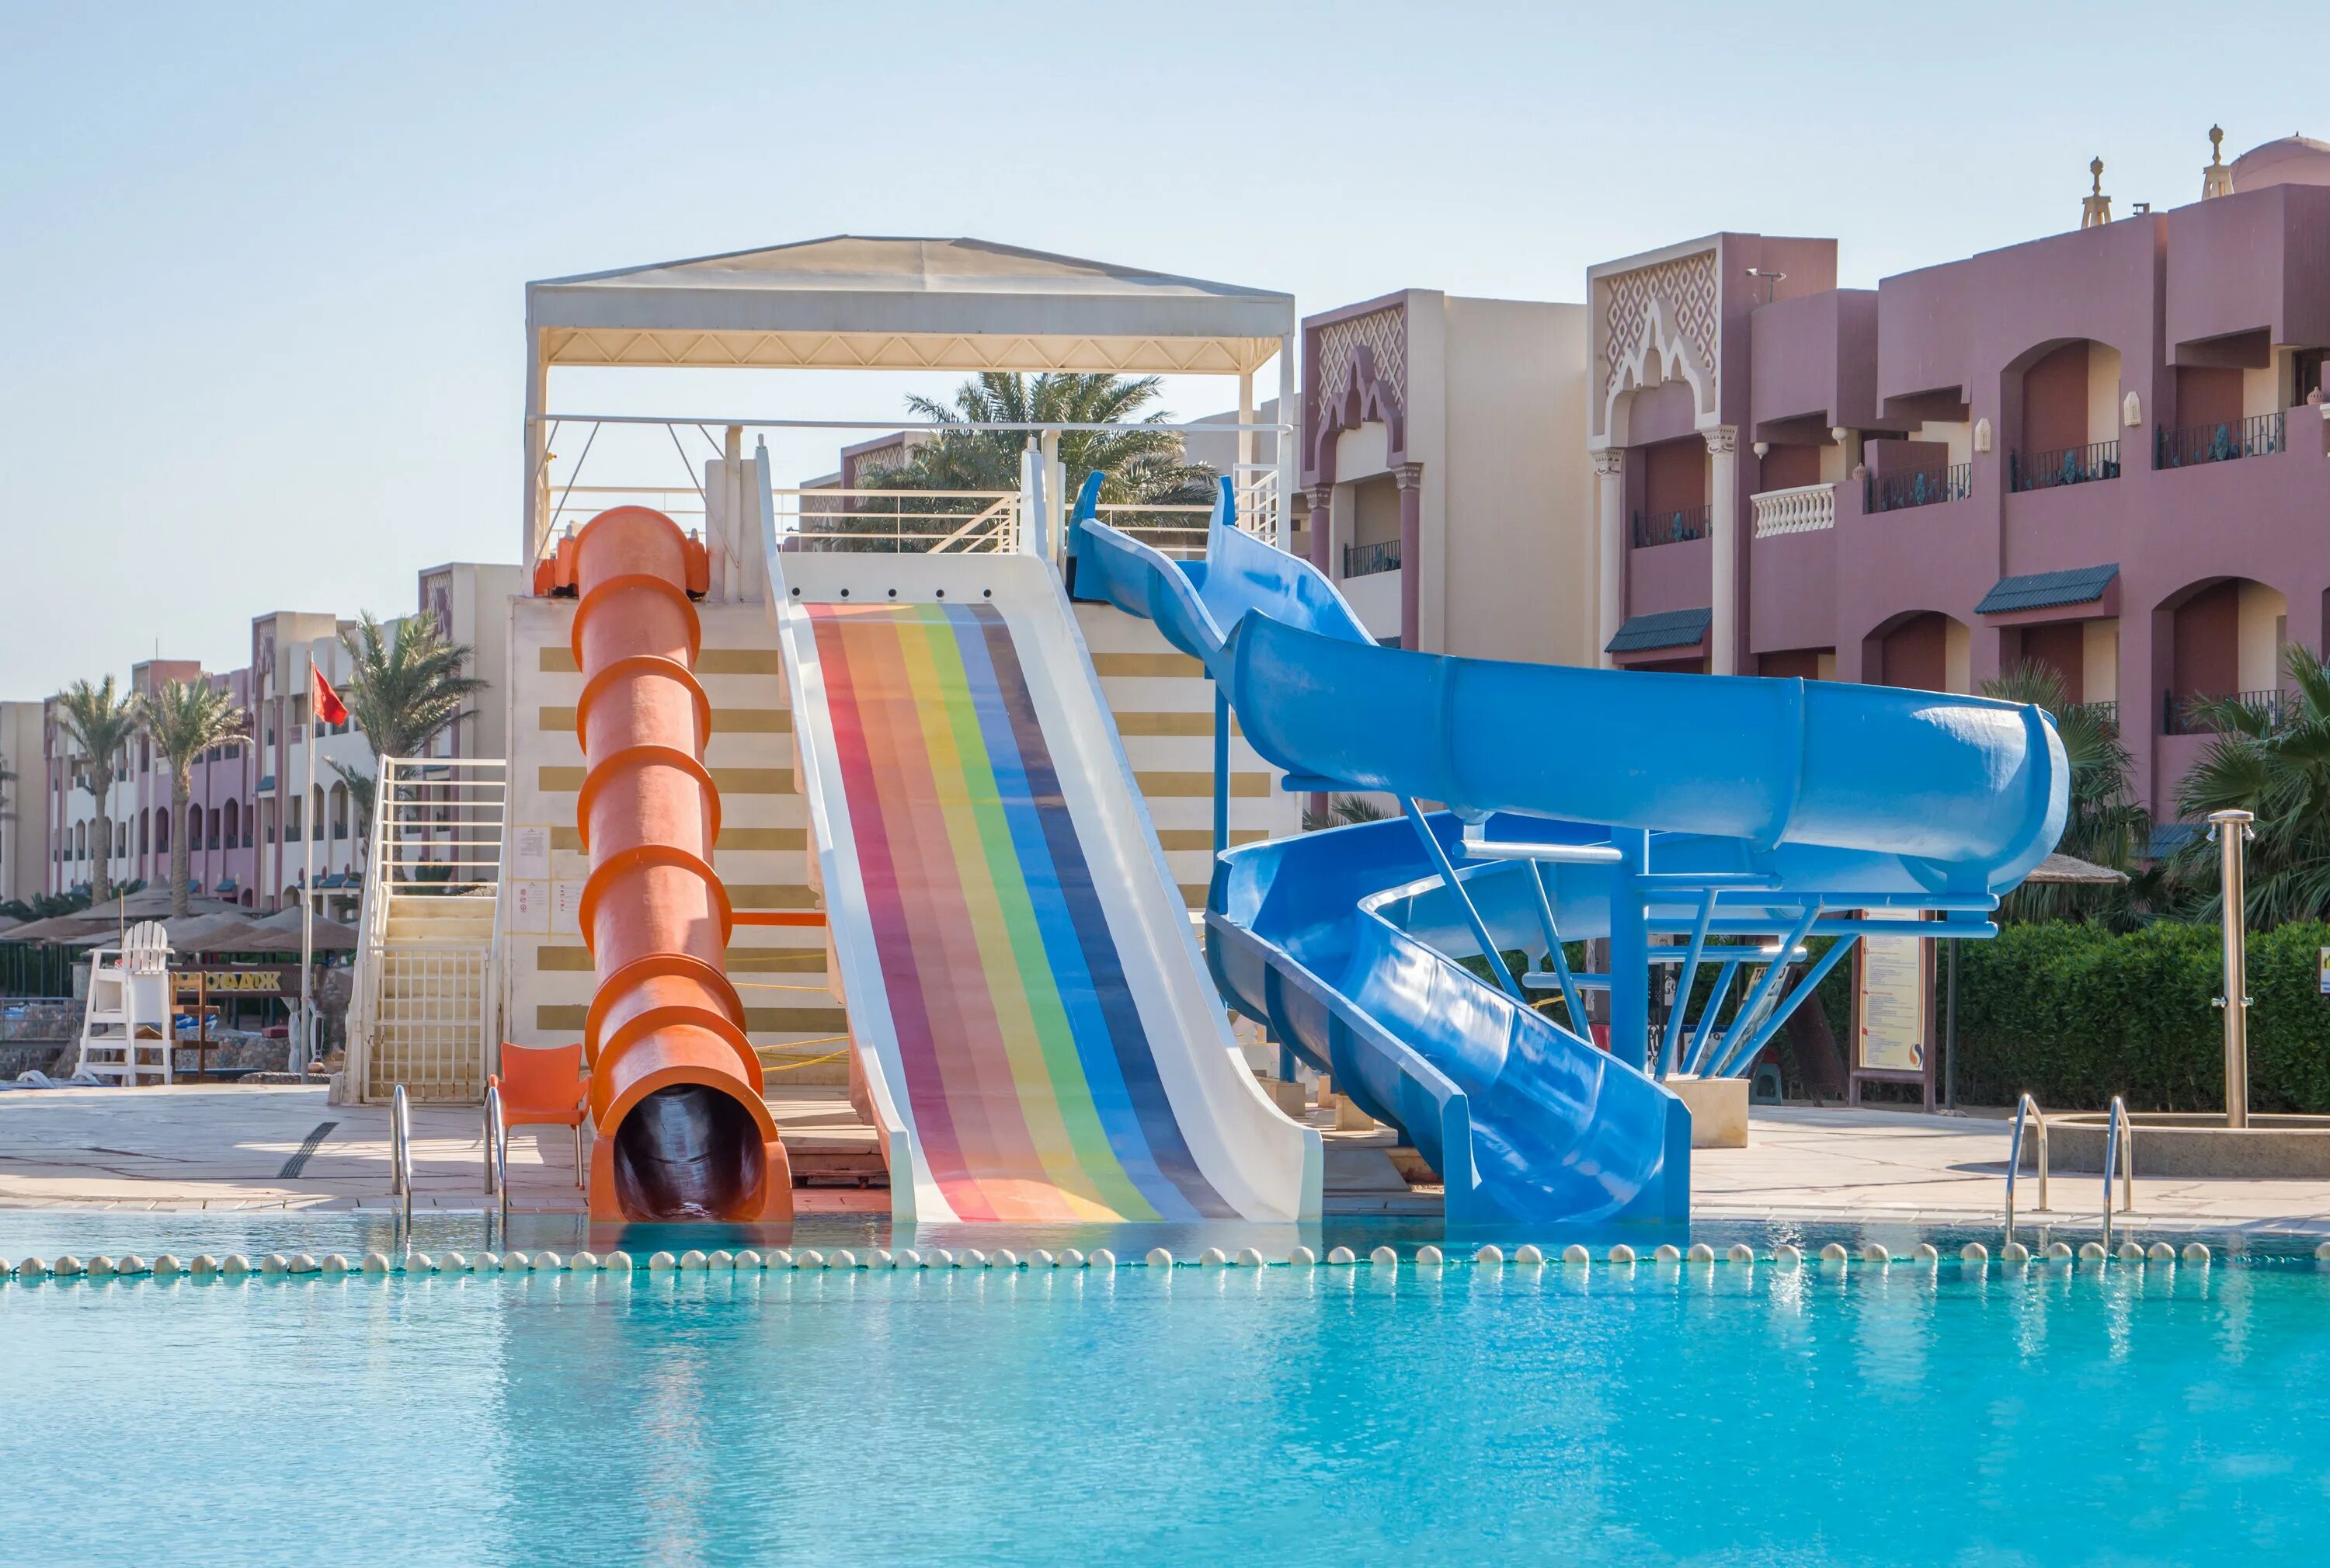 Отель Sunny Days Resort Spa Aqua Park 4. Sunny Days Resort Aqua Park 4 Хургада. Египет отель Санни дейс Хургада. Отель Египет Санни Дэй Резорт спа 4.